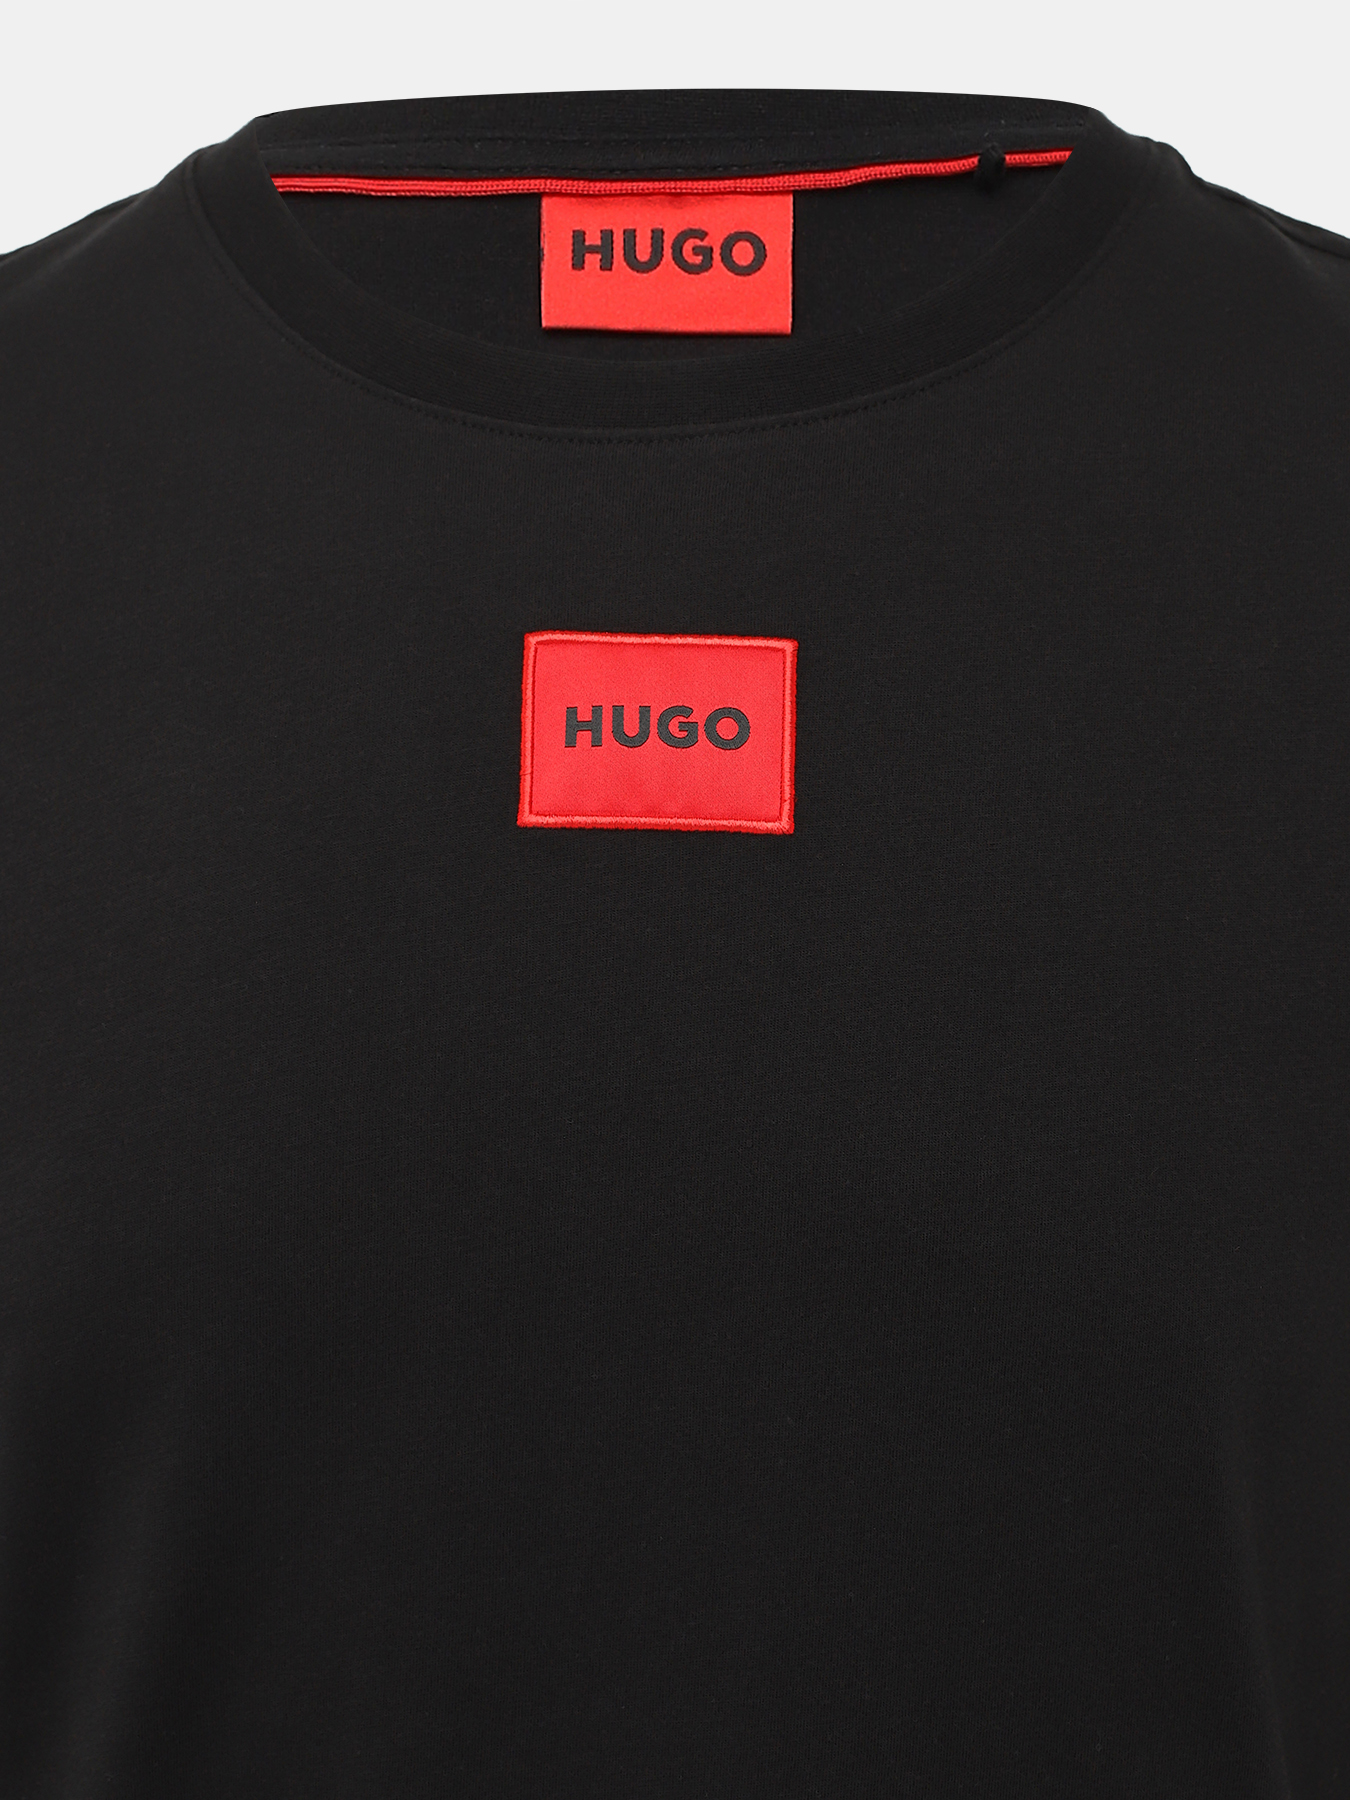 Лонгслив Diragolo HUGO 438651-044, цвет черный, размер 50-52 - фото 2